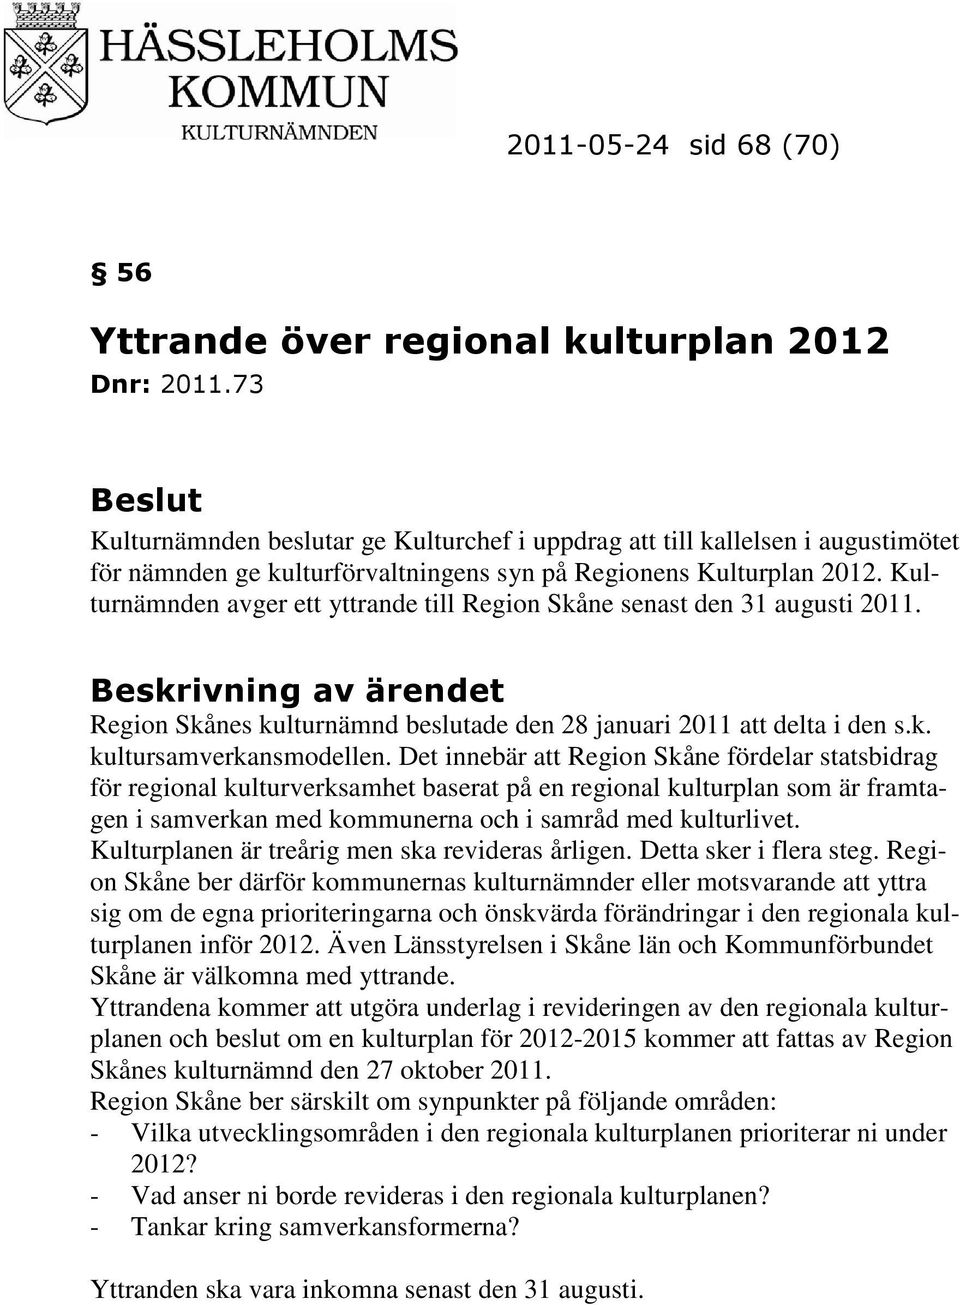 Kulturnämnden avger ett yttrande till Region Skåne senast den 31 augusti 2011. Beskrivning av ärendet Region Skånes kulturnämnd beslutade den 28 januari 2011 att delta i den s.k. kultursamverkansmodellen.